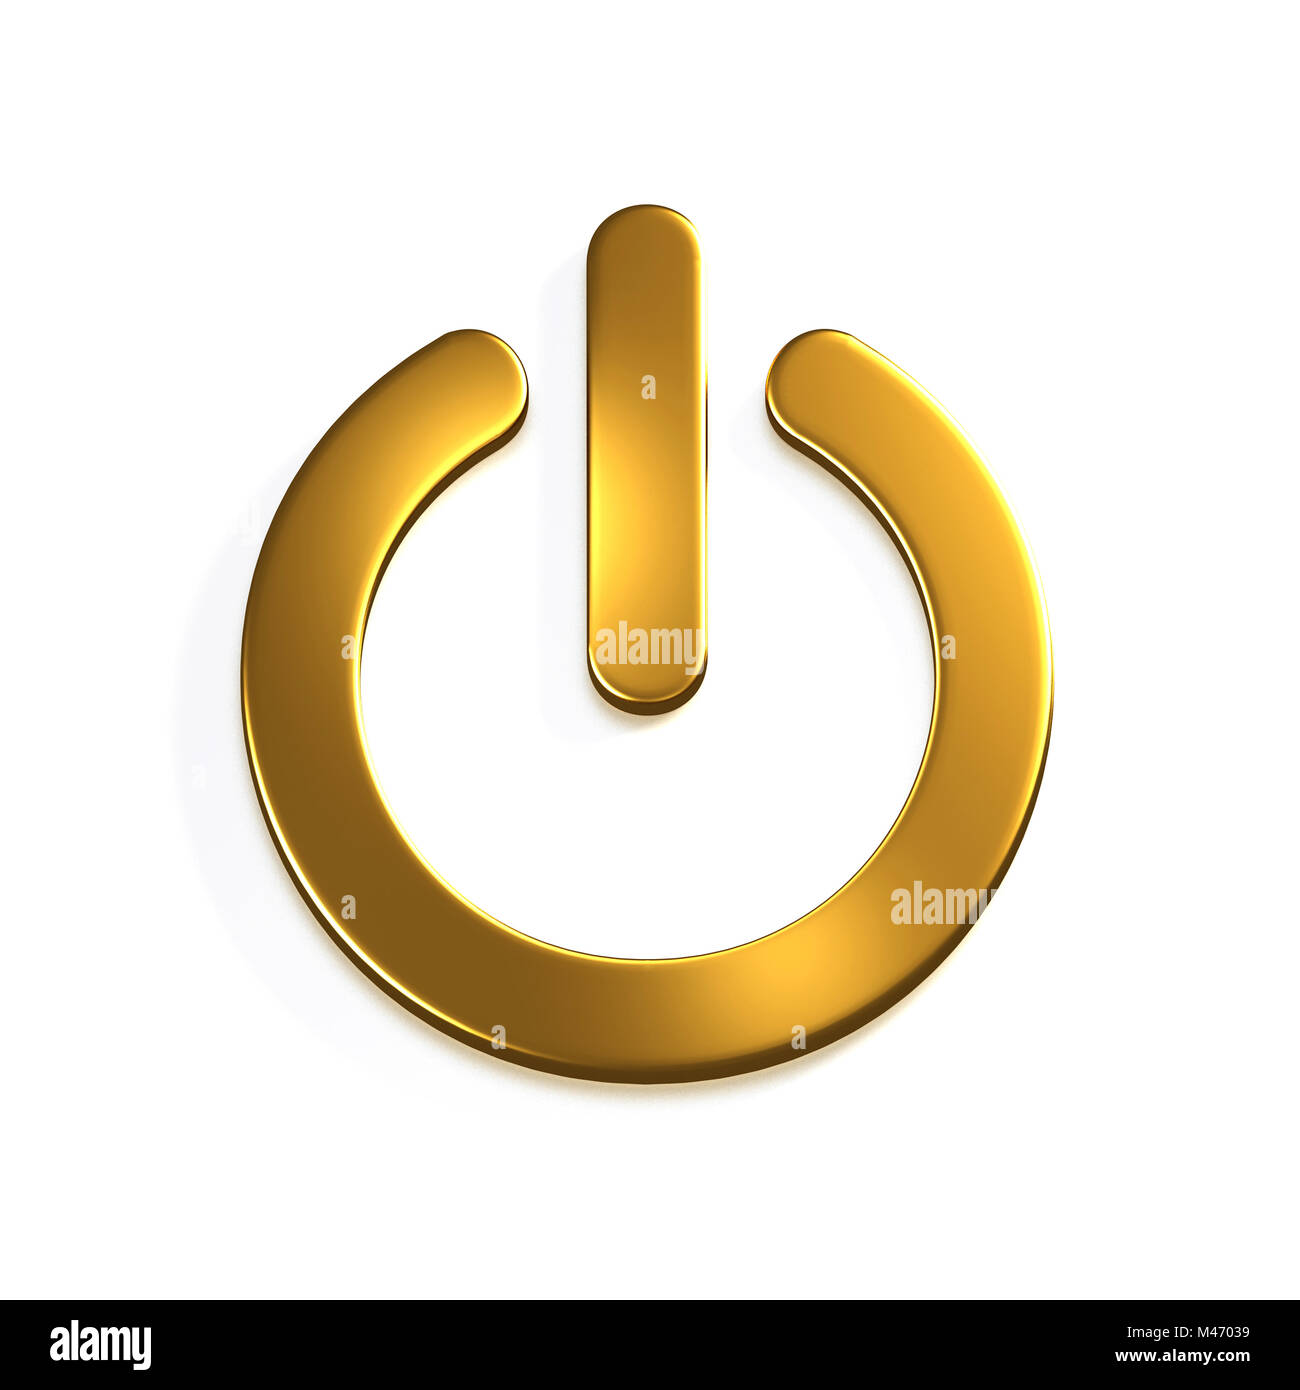 Botón de encendido del equipo de oro. 3D Render ilustración Foto de stock